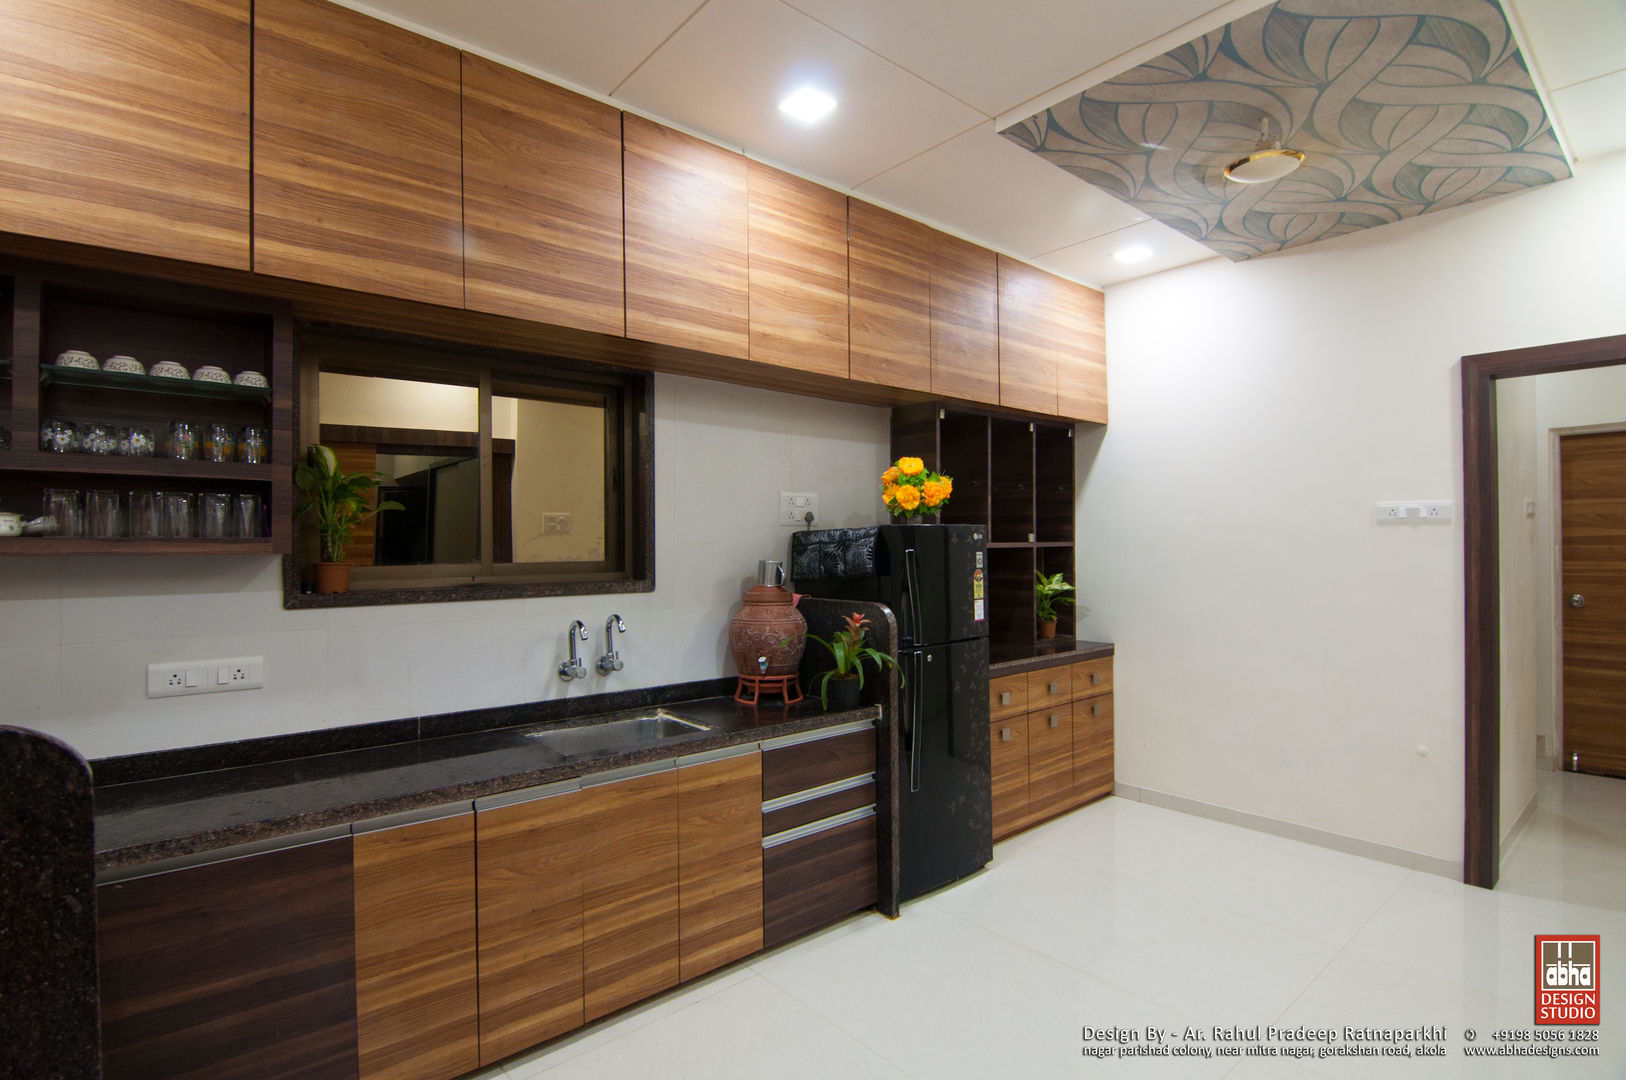 Interior of Residence for Mr. Chandrashekhar R, ABHA Design Studio ABHA Design Studio Kitchen Cabinets & shelves